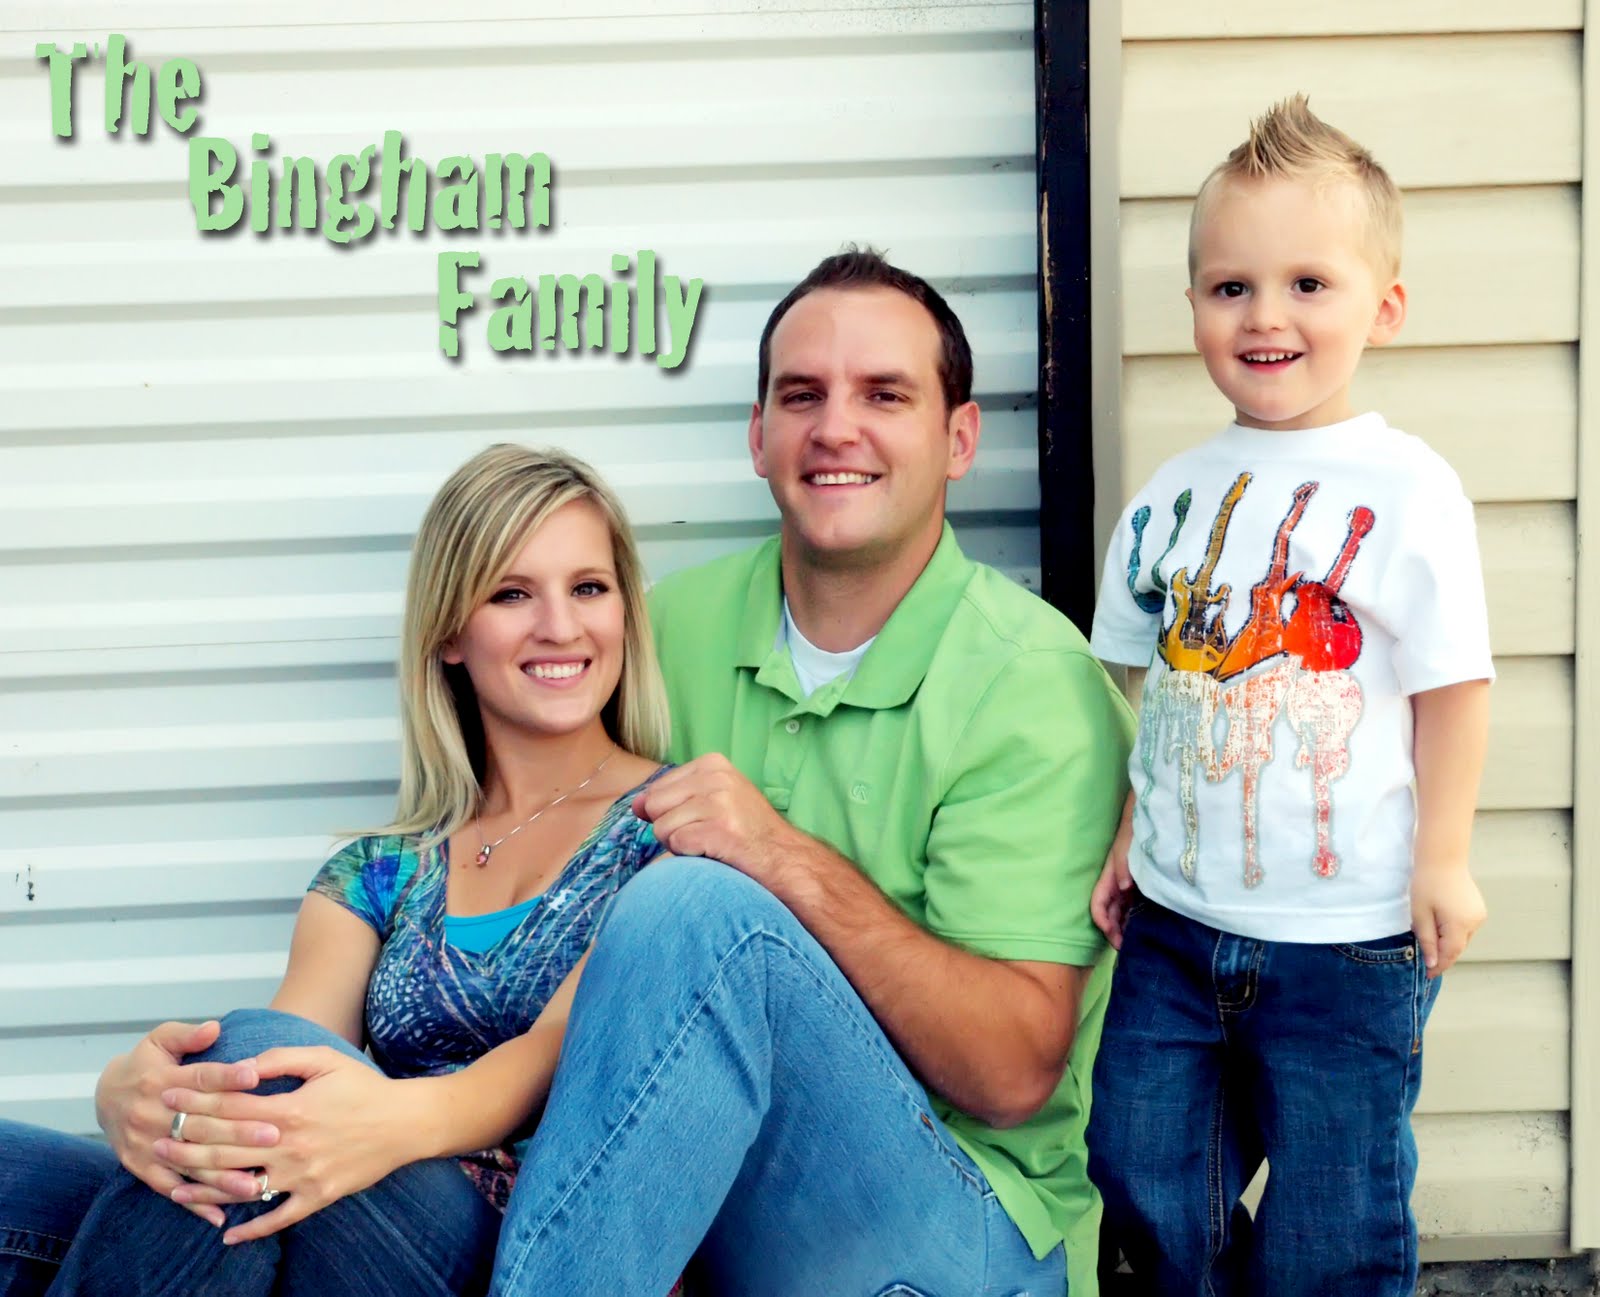 Bingham Family